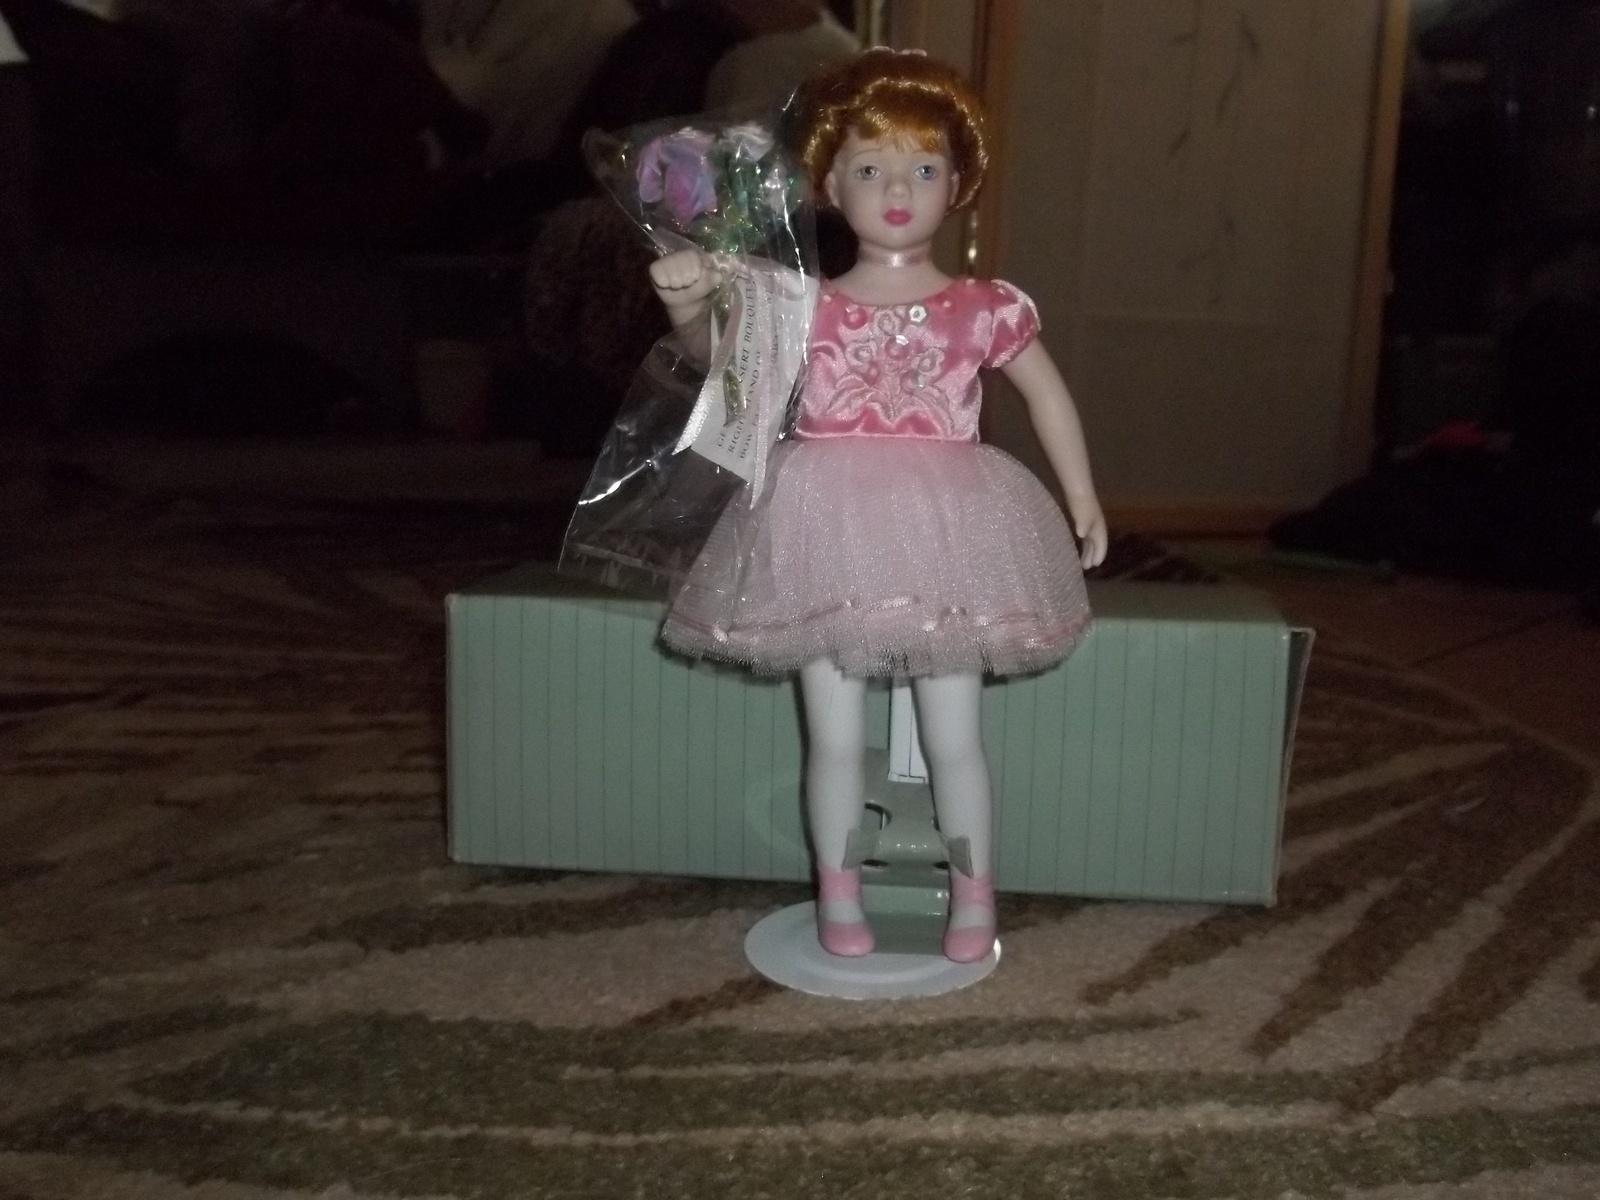 Primary image for Avon porcelain doll "Ballet Recital" nib